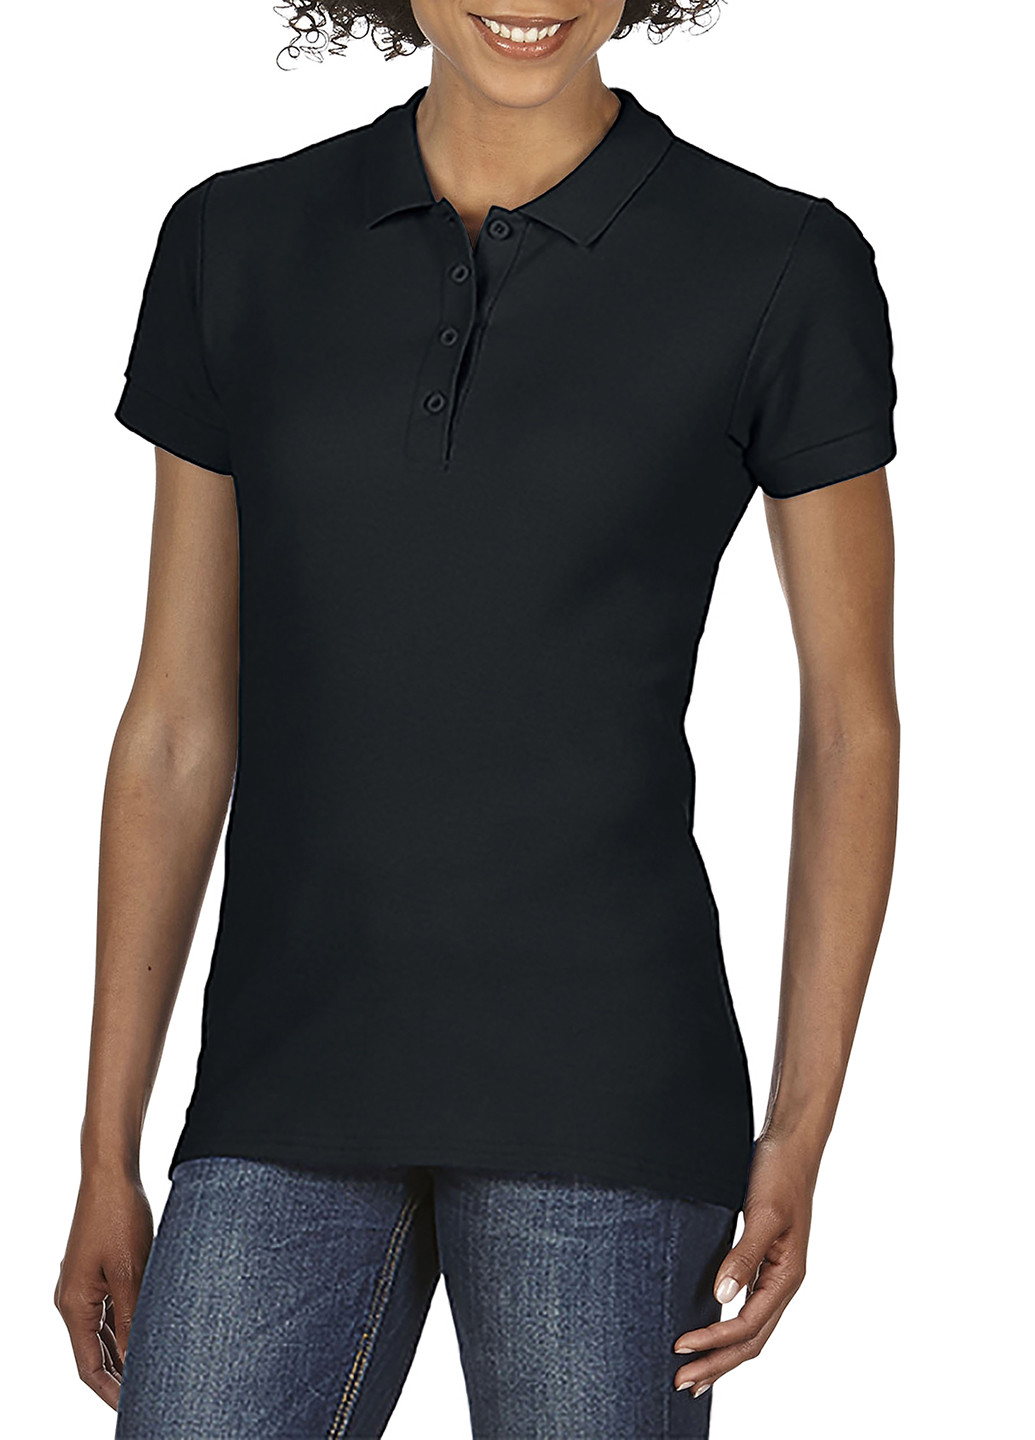 Черная женская футболка-поло Gildan однотонная